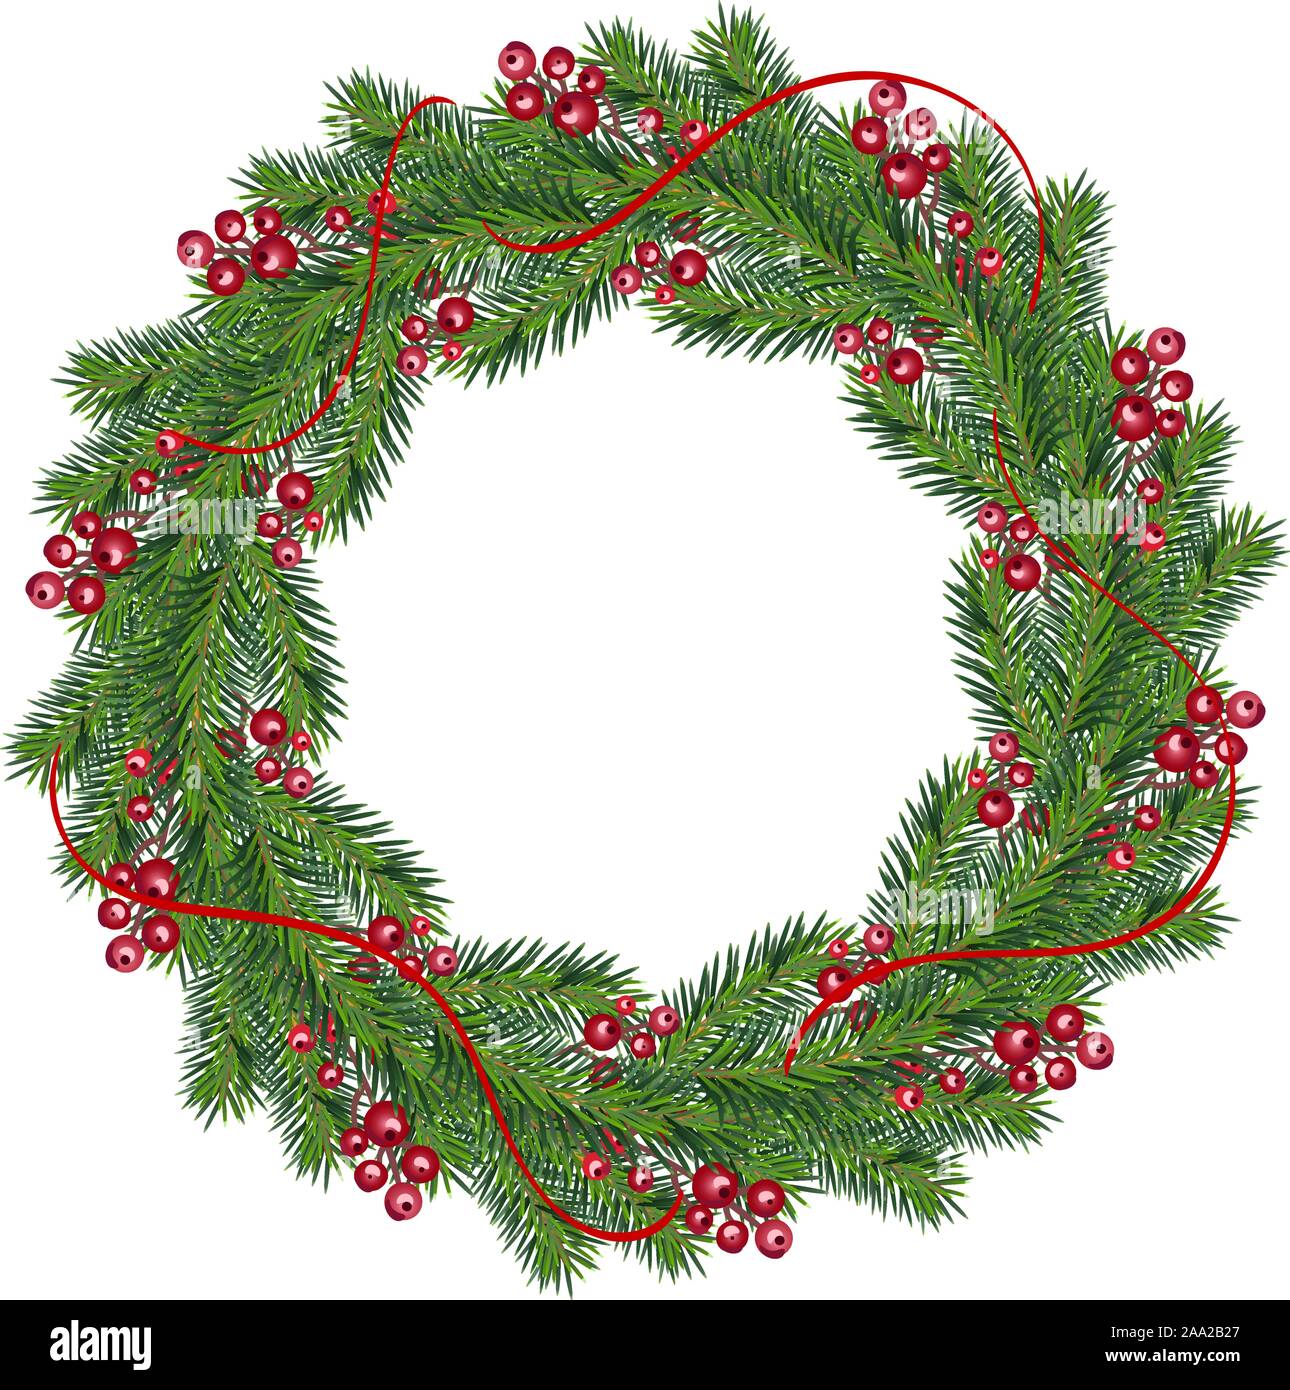 Vecteur de Noël réaliste avec couronne de fruits rouges sur les branches de conifères avec place pour le texte. Noël isolé l'illustration pour la carte de souhaits Illustration de Vecteur